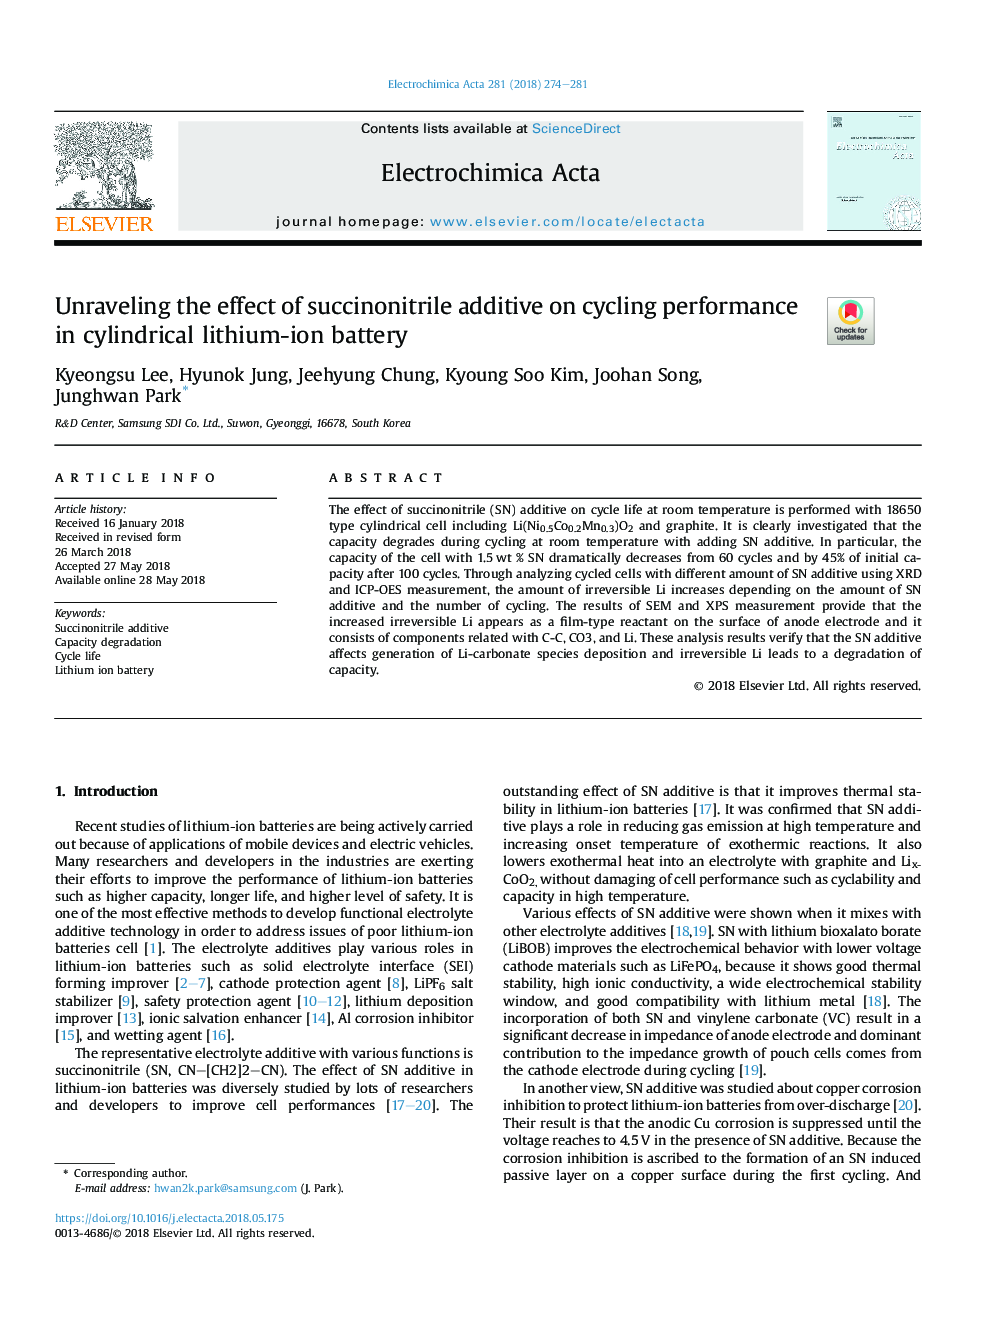 تجزیه و تحلیل اثر افزودن سوشکنینتریل بر عملکرد دوچرخه سواری در باتری لیتیوم استوانه ای 